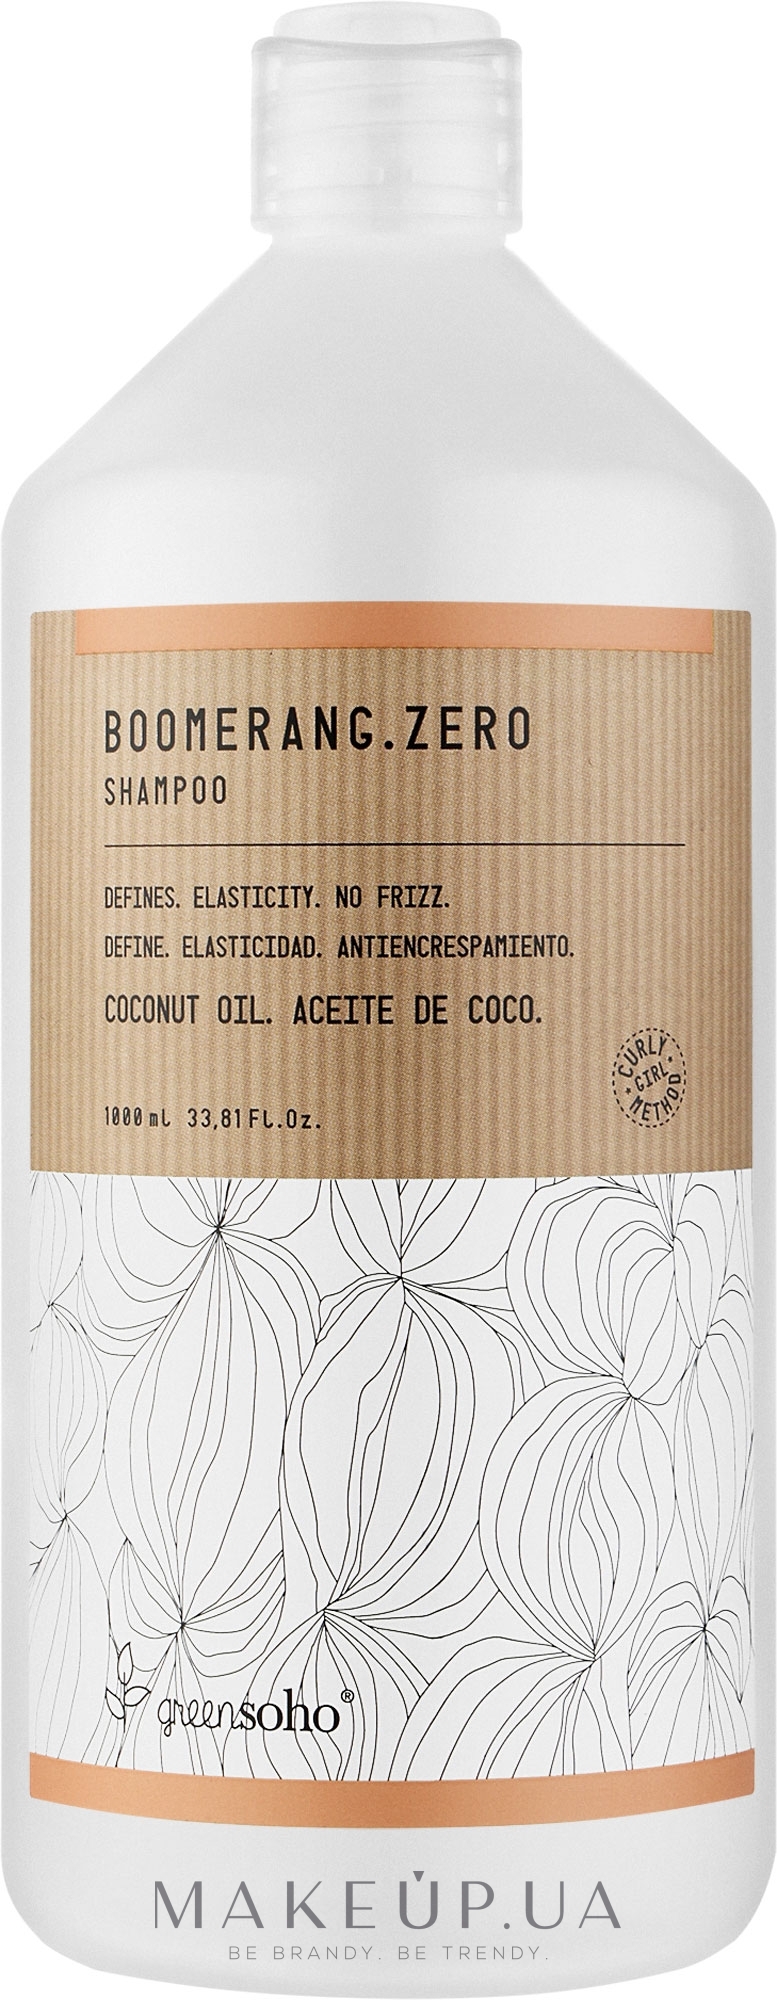 Увлажняющий шампунь для волнистых и вьющихся волос - GreenSoho Boomerang.Zero Shampoo — фото 1000ml